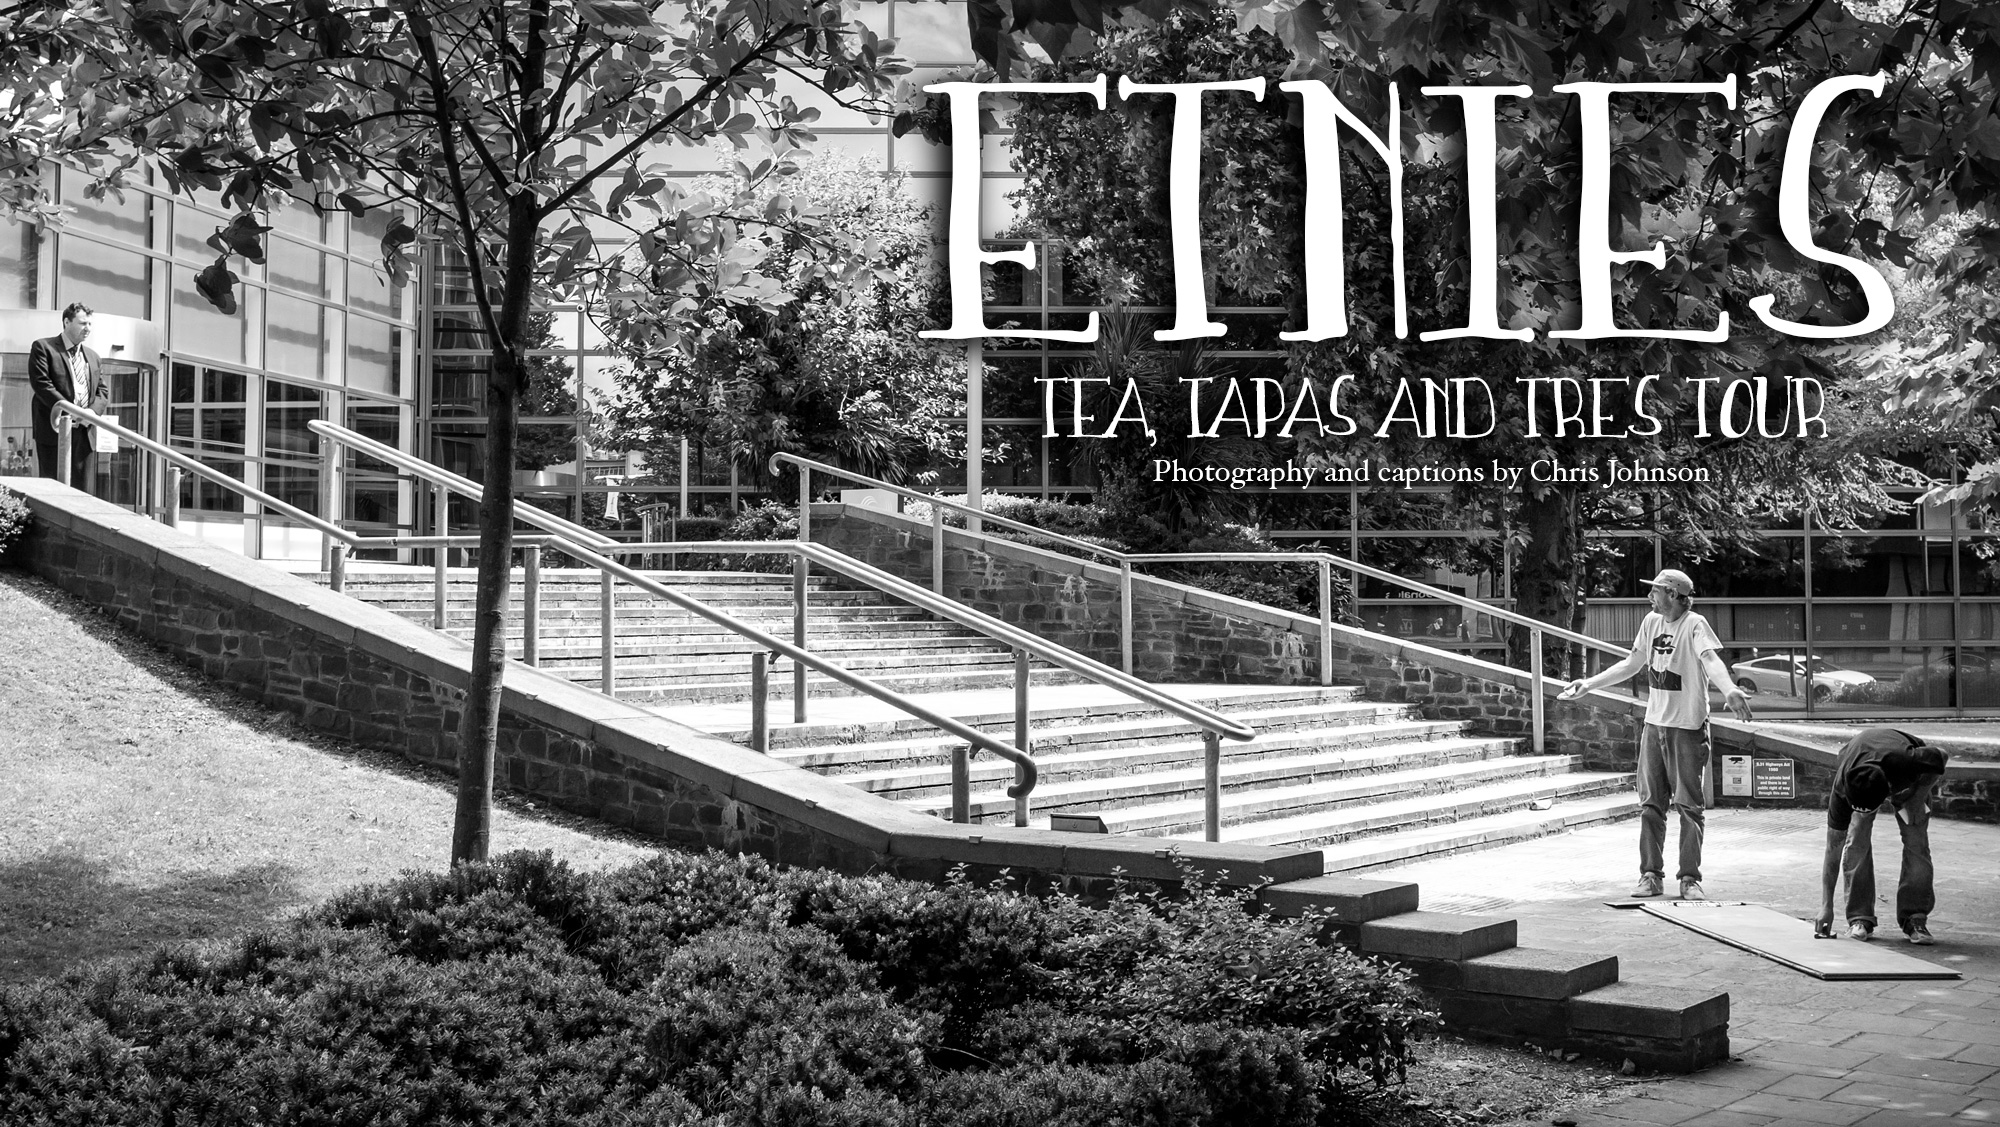 Etnies – tea, tapas and tres